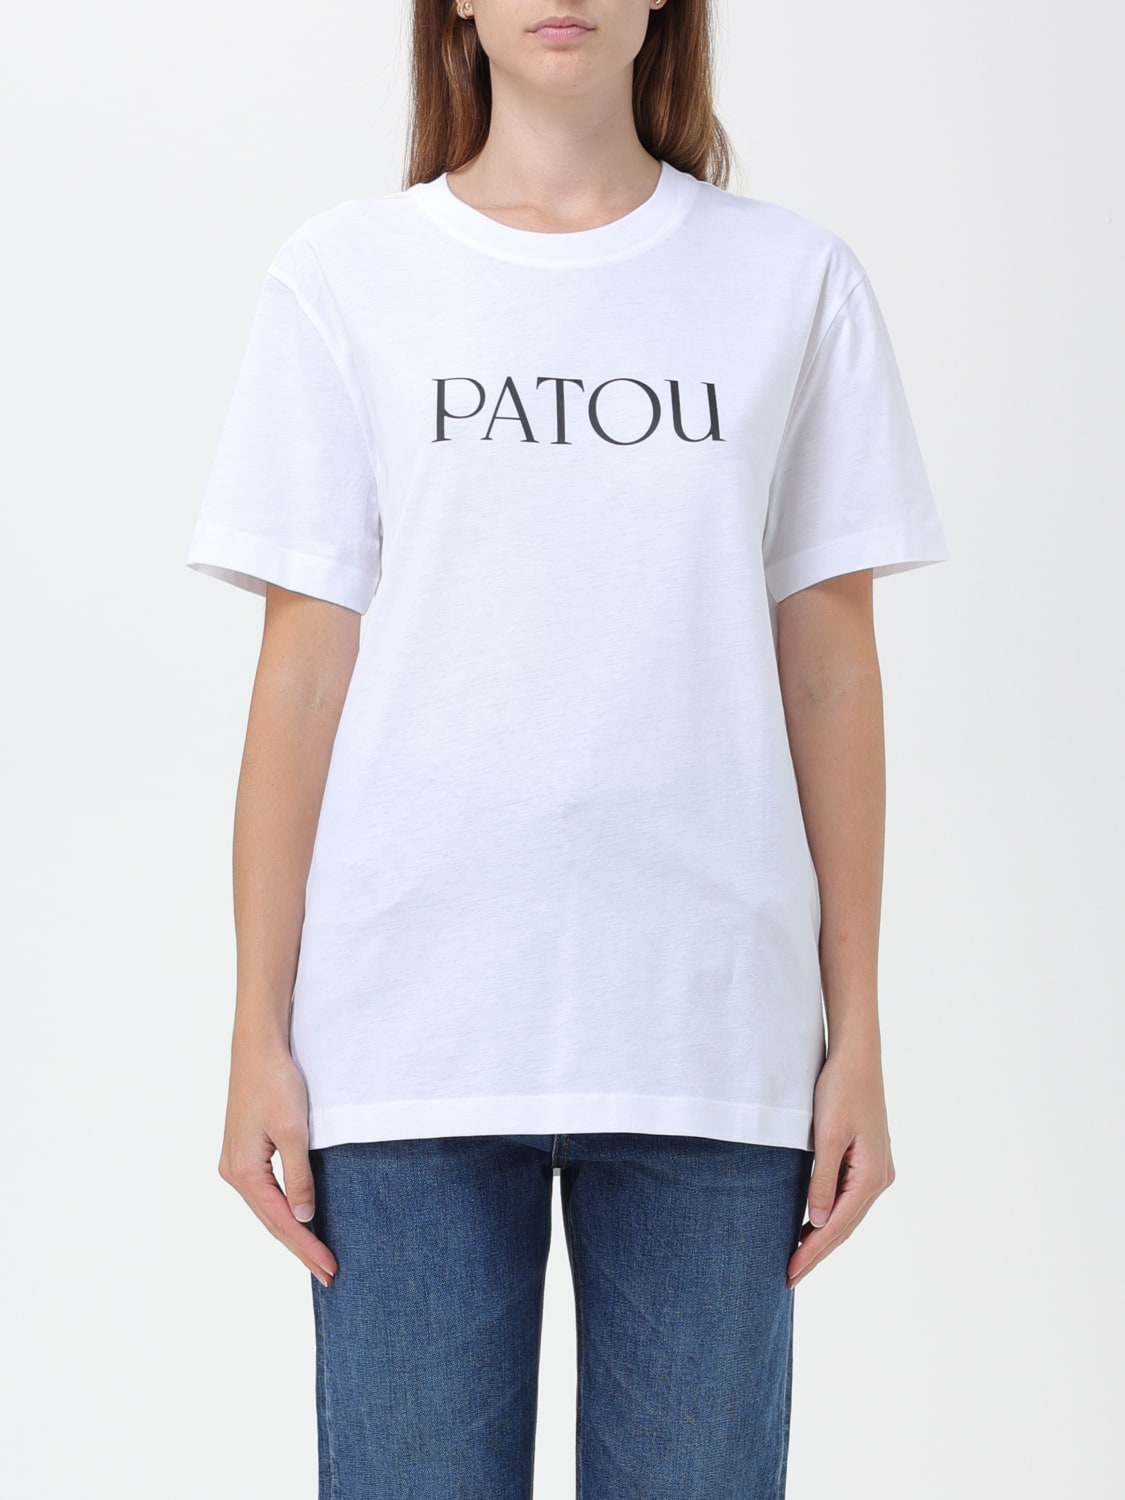 よろしくお願いいたしますPATOU Tシャツ